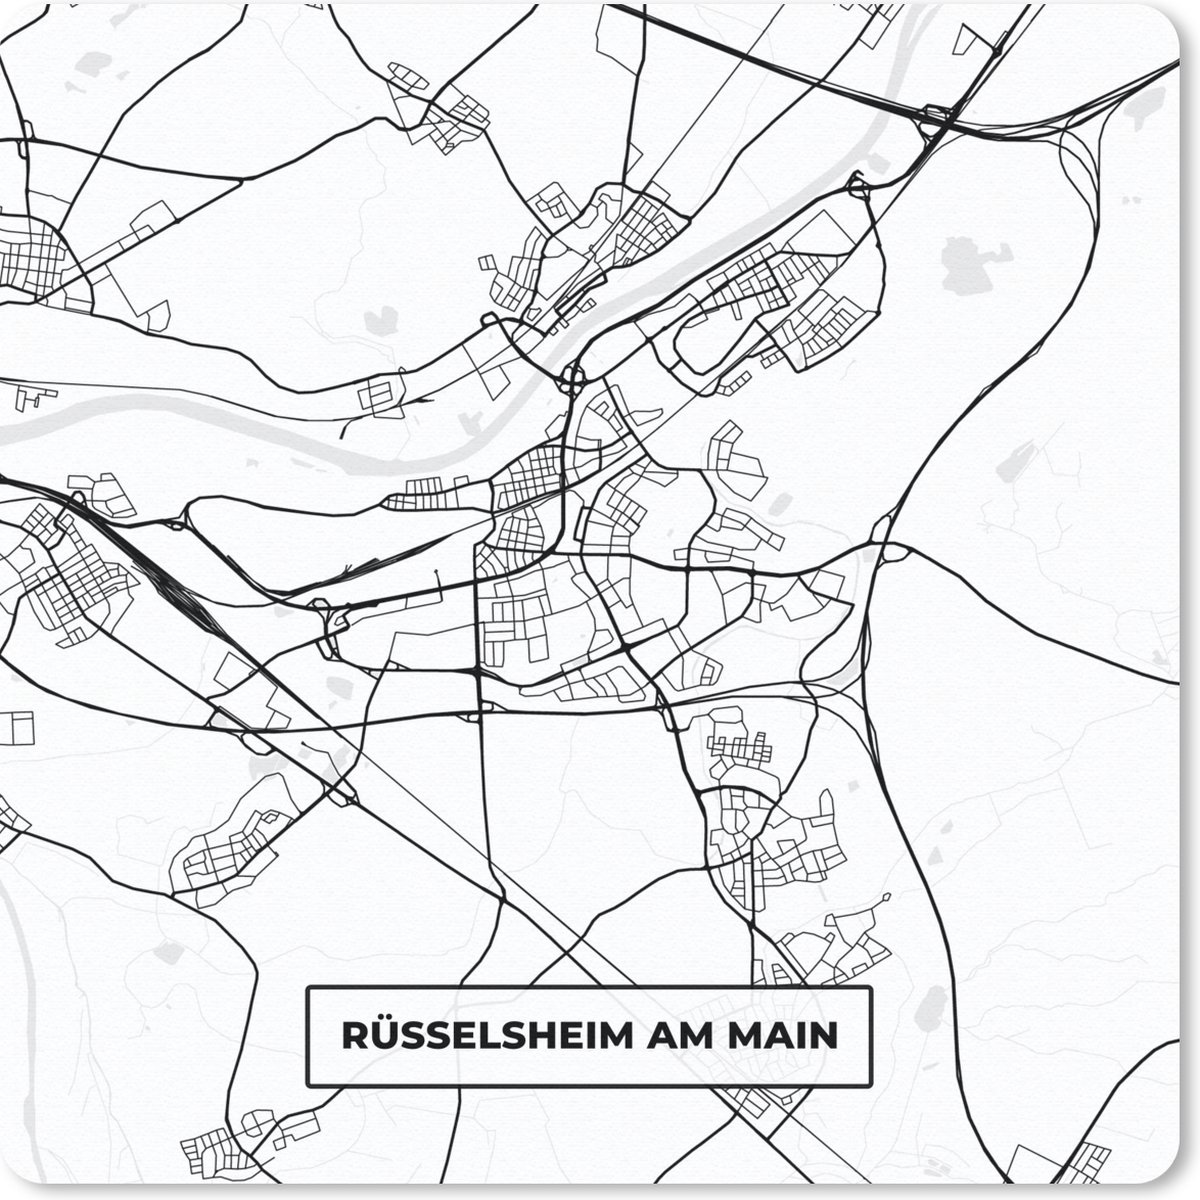 Muismat Klein - Rüsselsheim am Main - Kaart - Stadskaart - Plattegrond - 20x20 cm